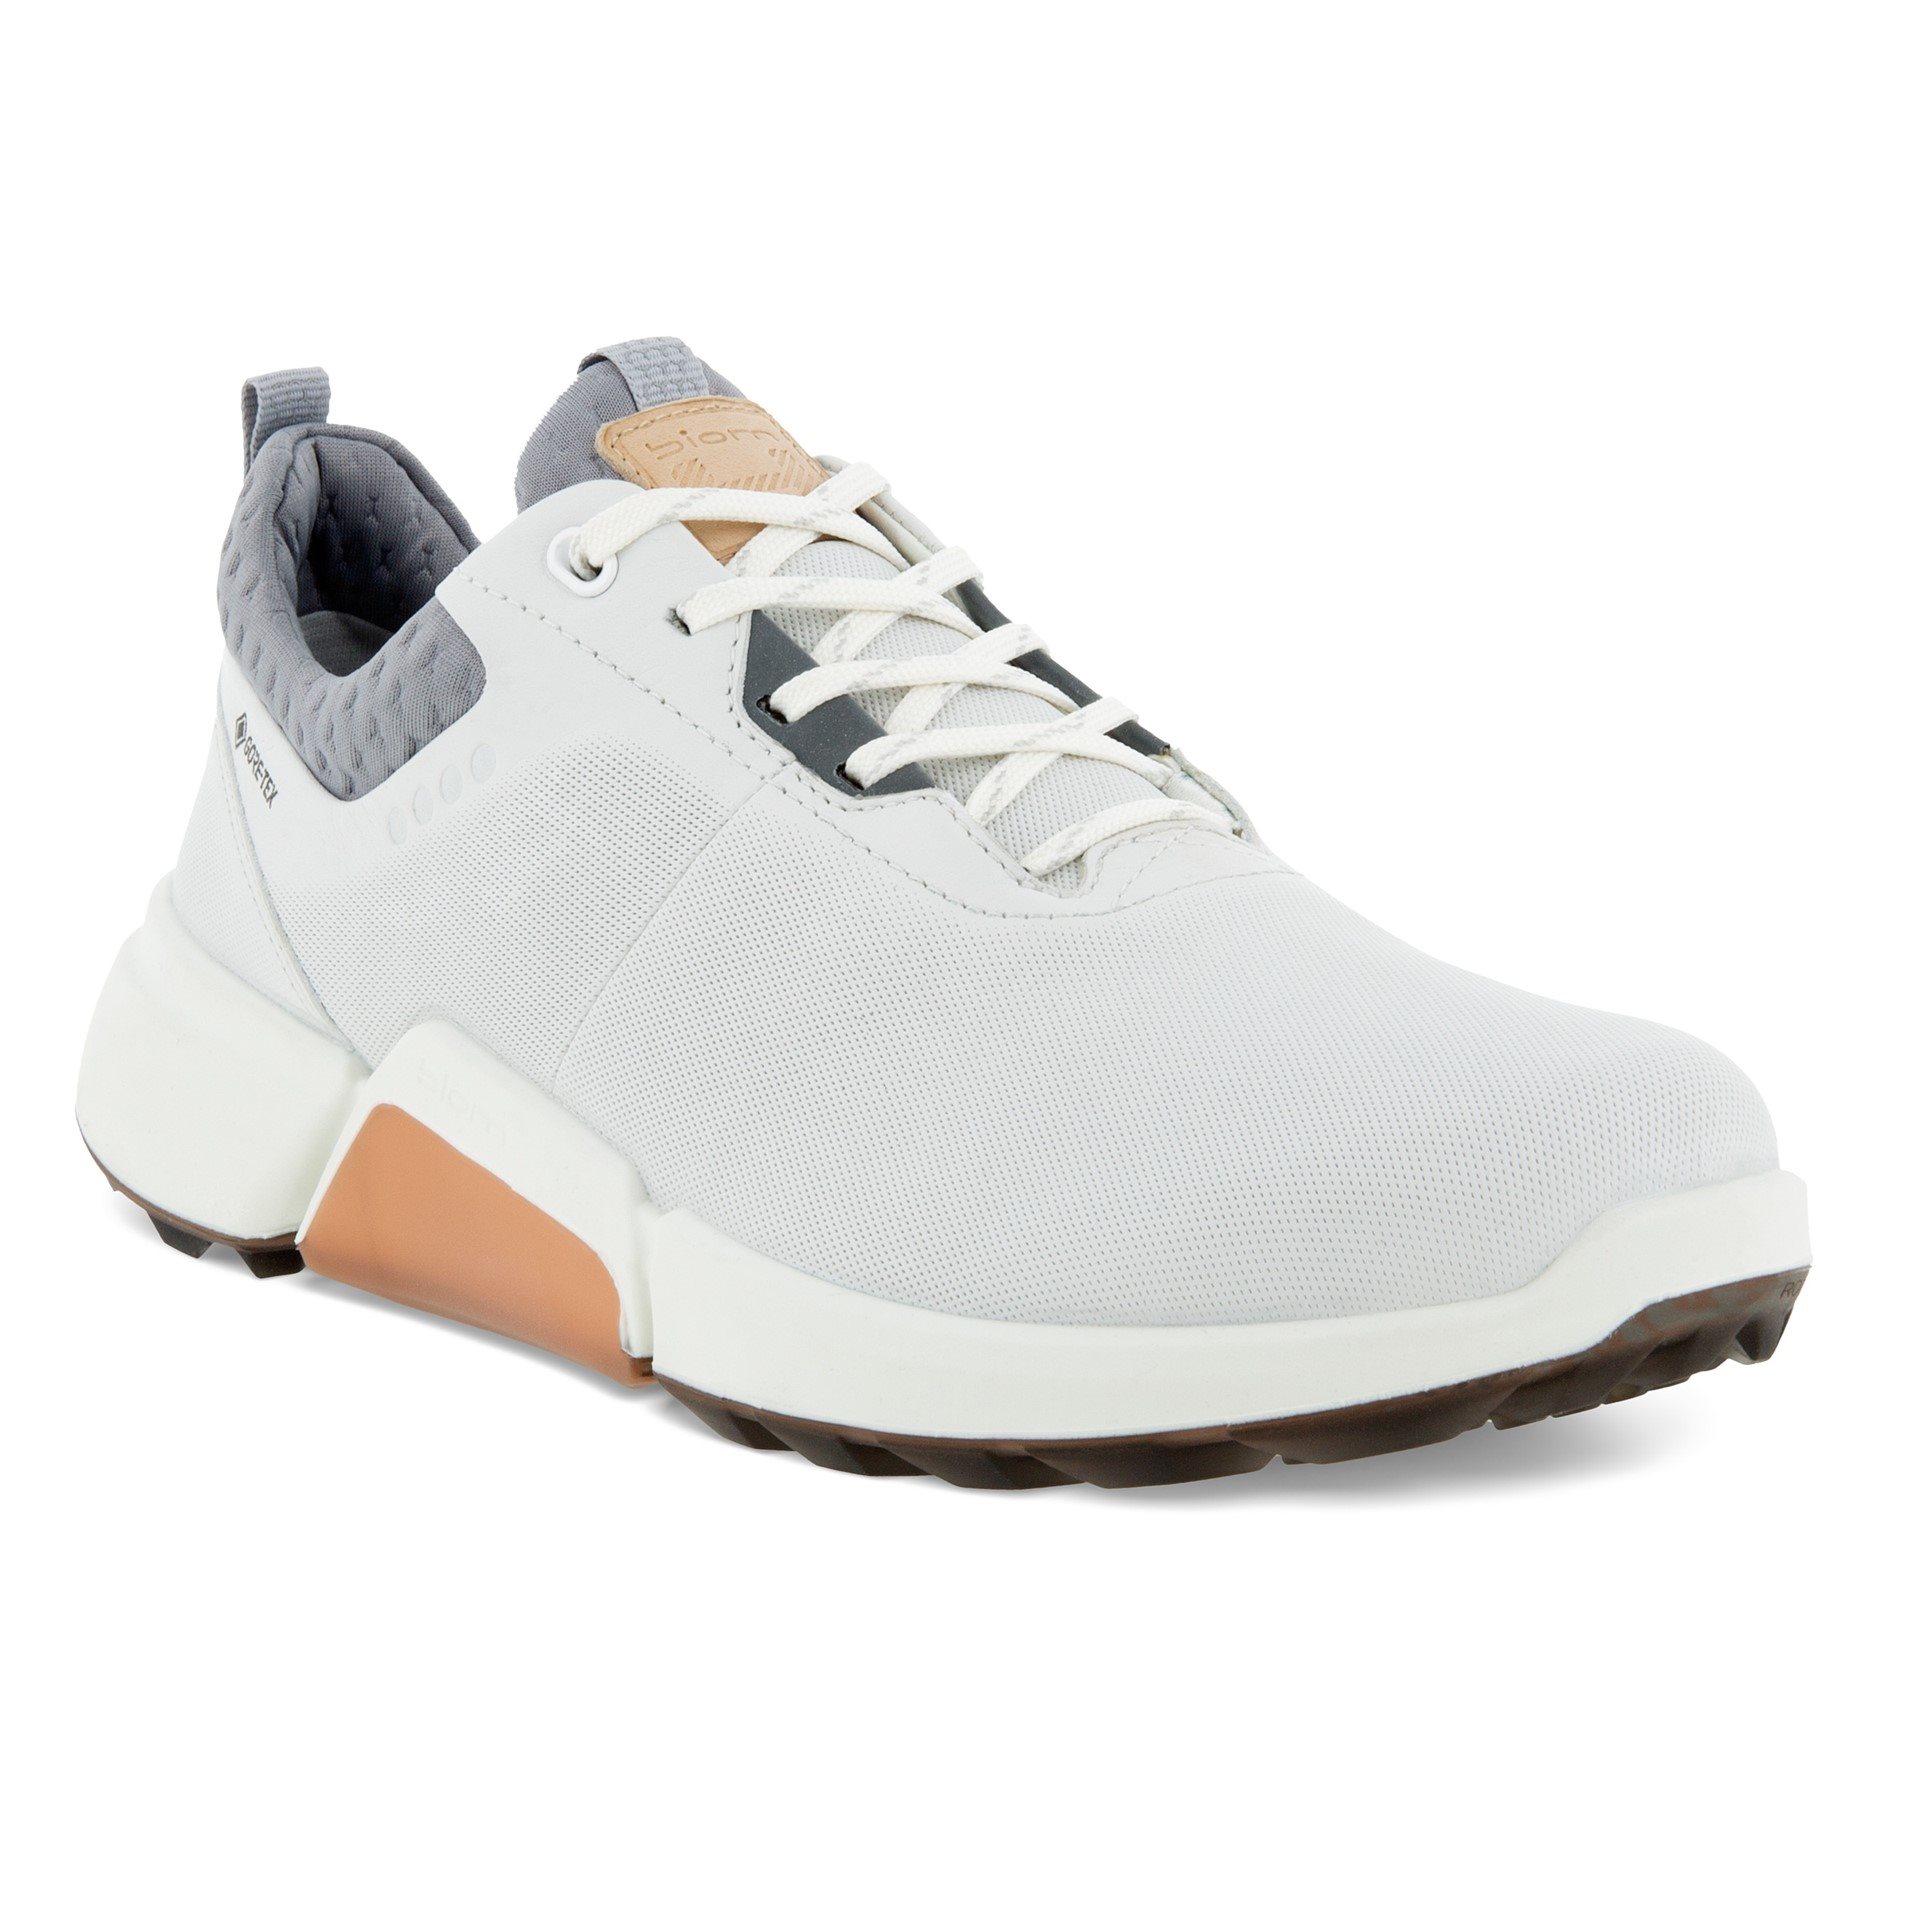 Ecco dames golfschoenen Golf H4 wit zilver grijs - Golftassen, Golfclubs, Golfschoenen | Ook online kopen bij Golfers Point | Golfers Point